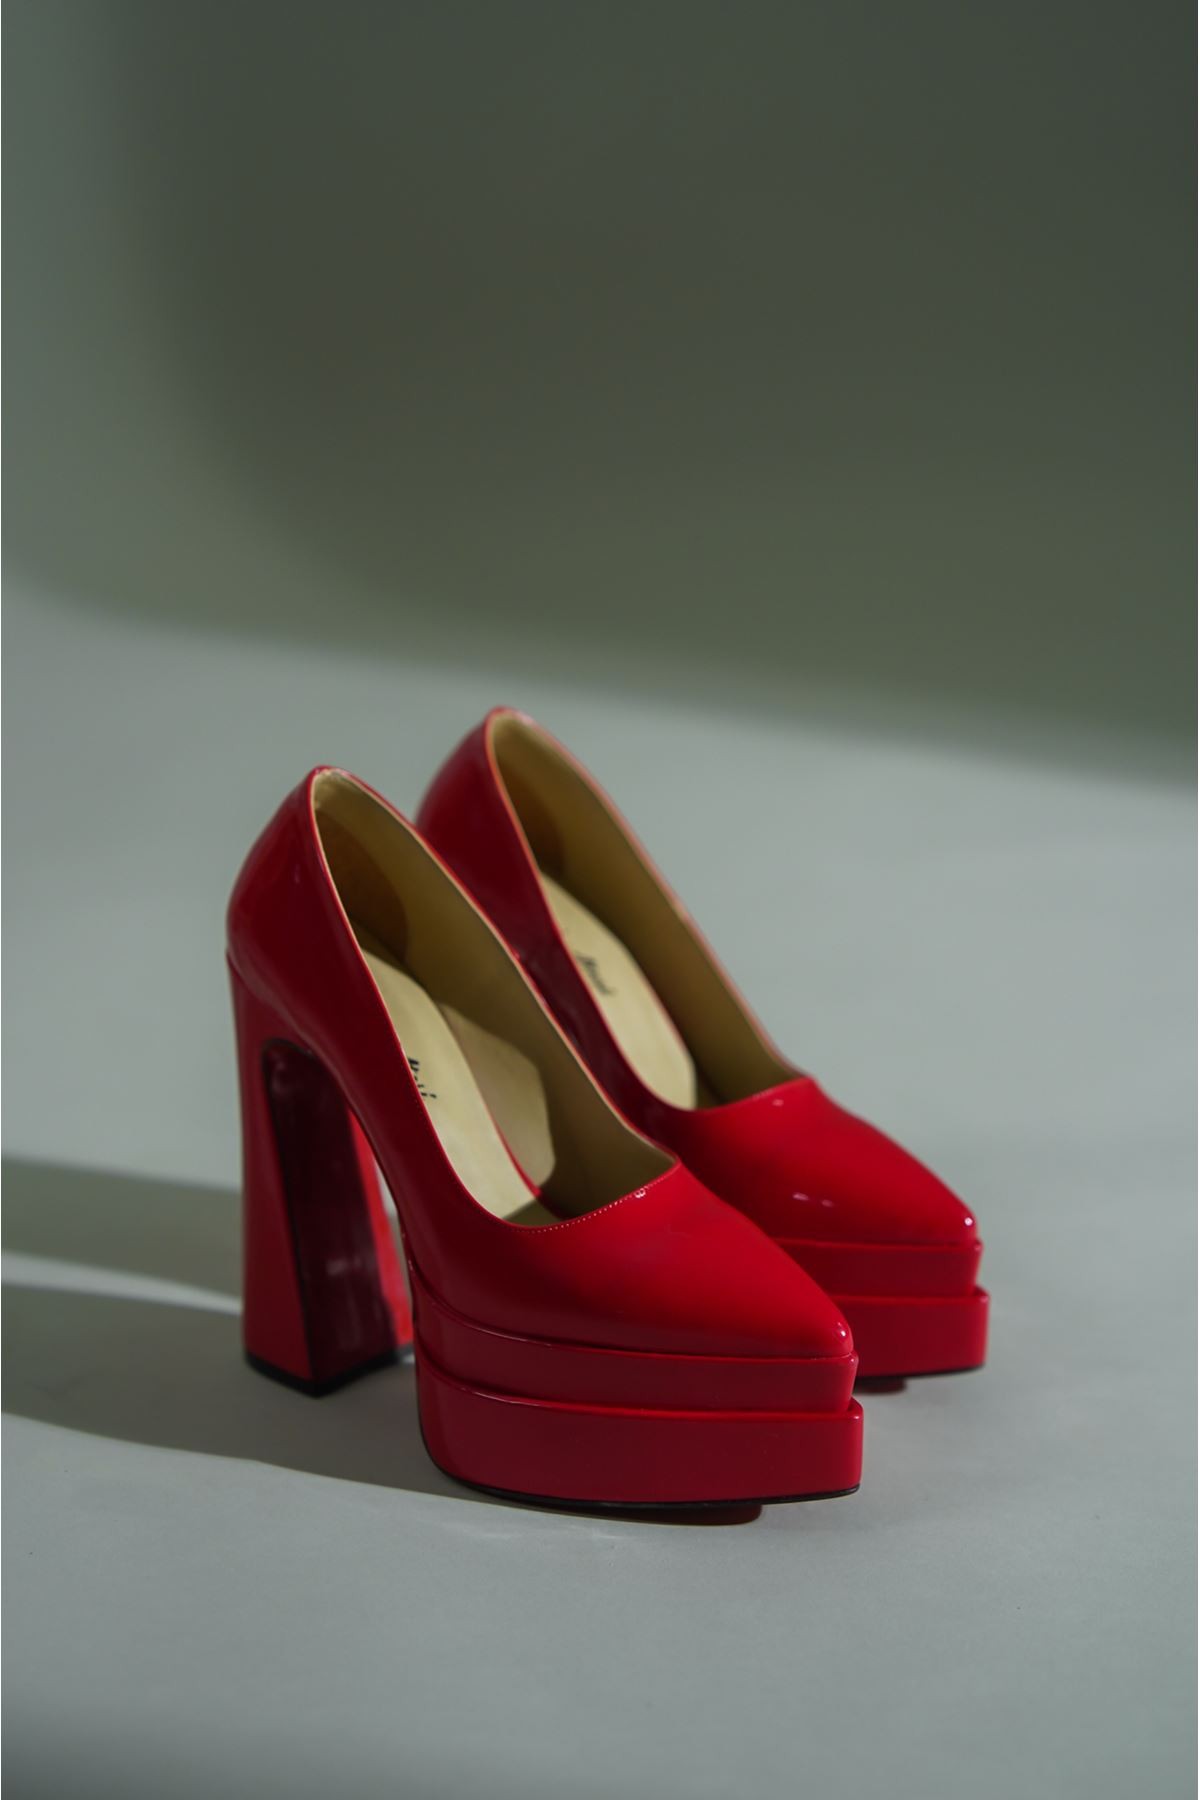 Kırmızı Çift Platform Özel Tasarım Kadın Ayakkabı Rigel